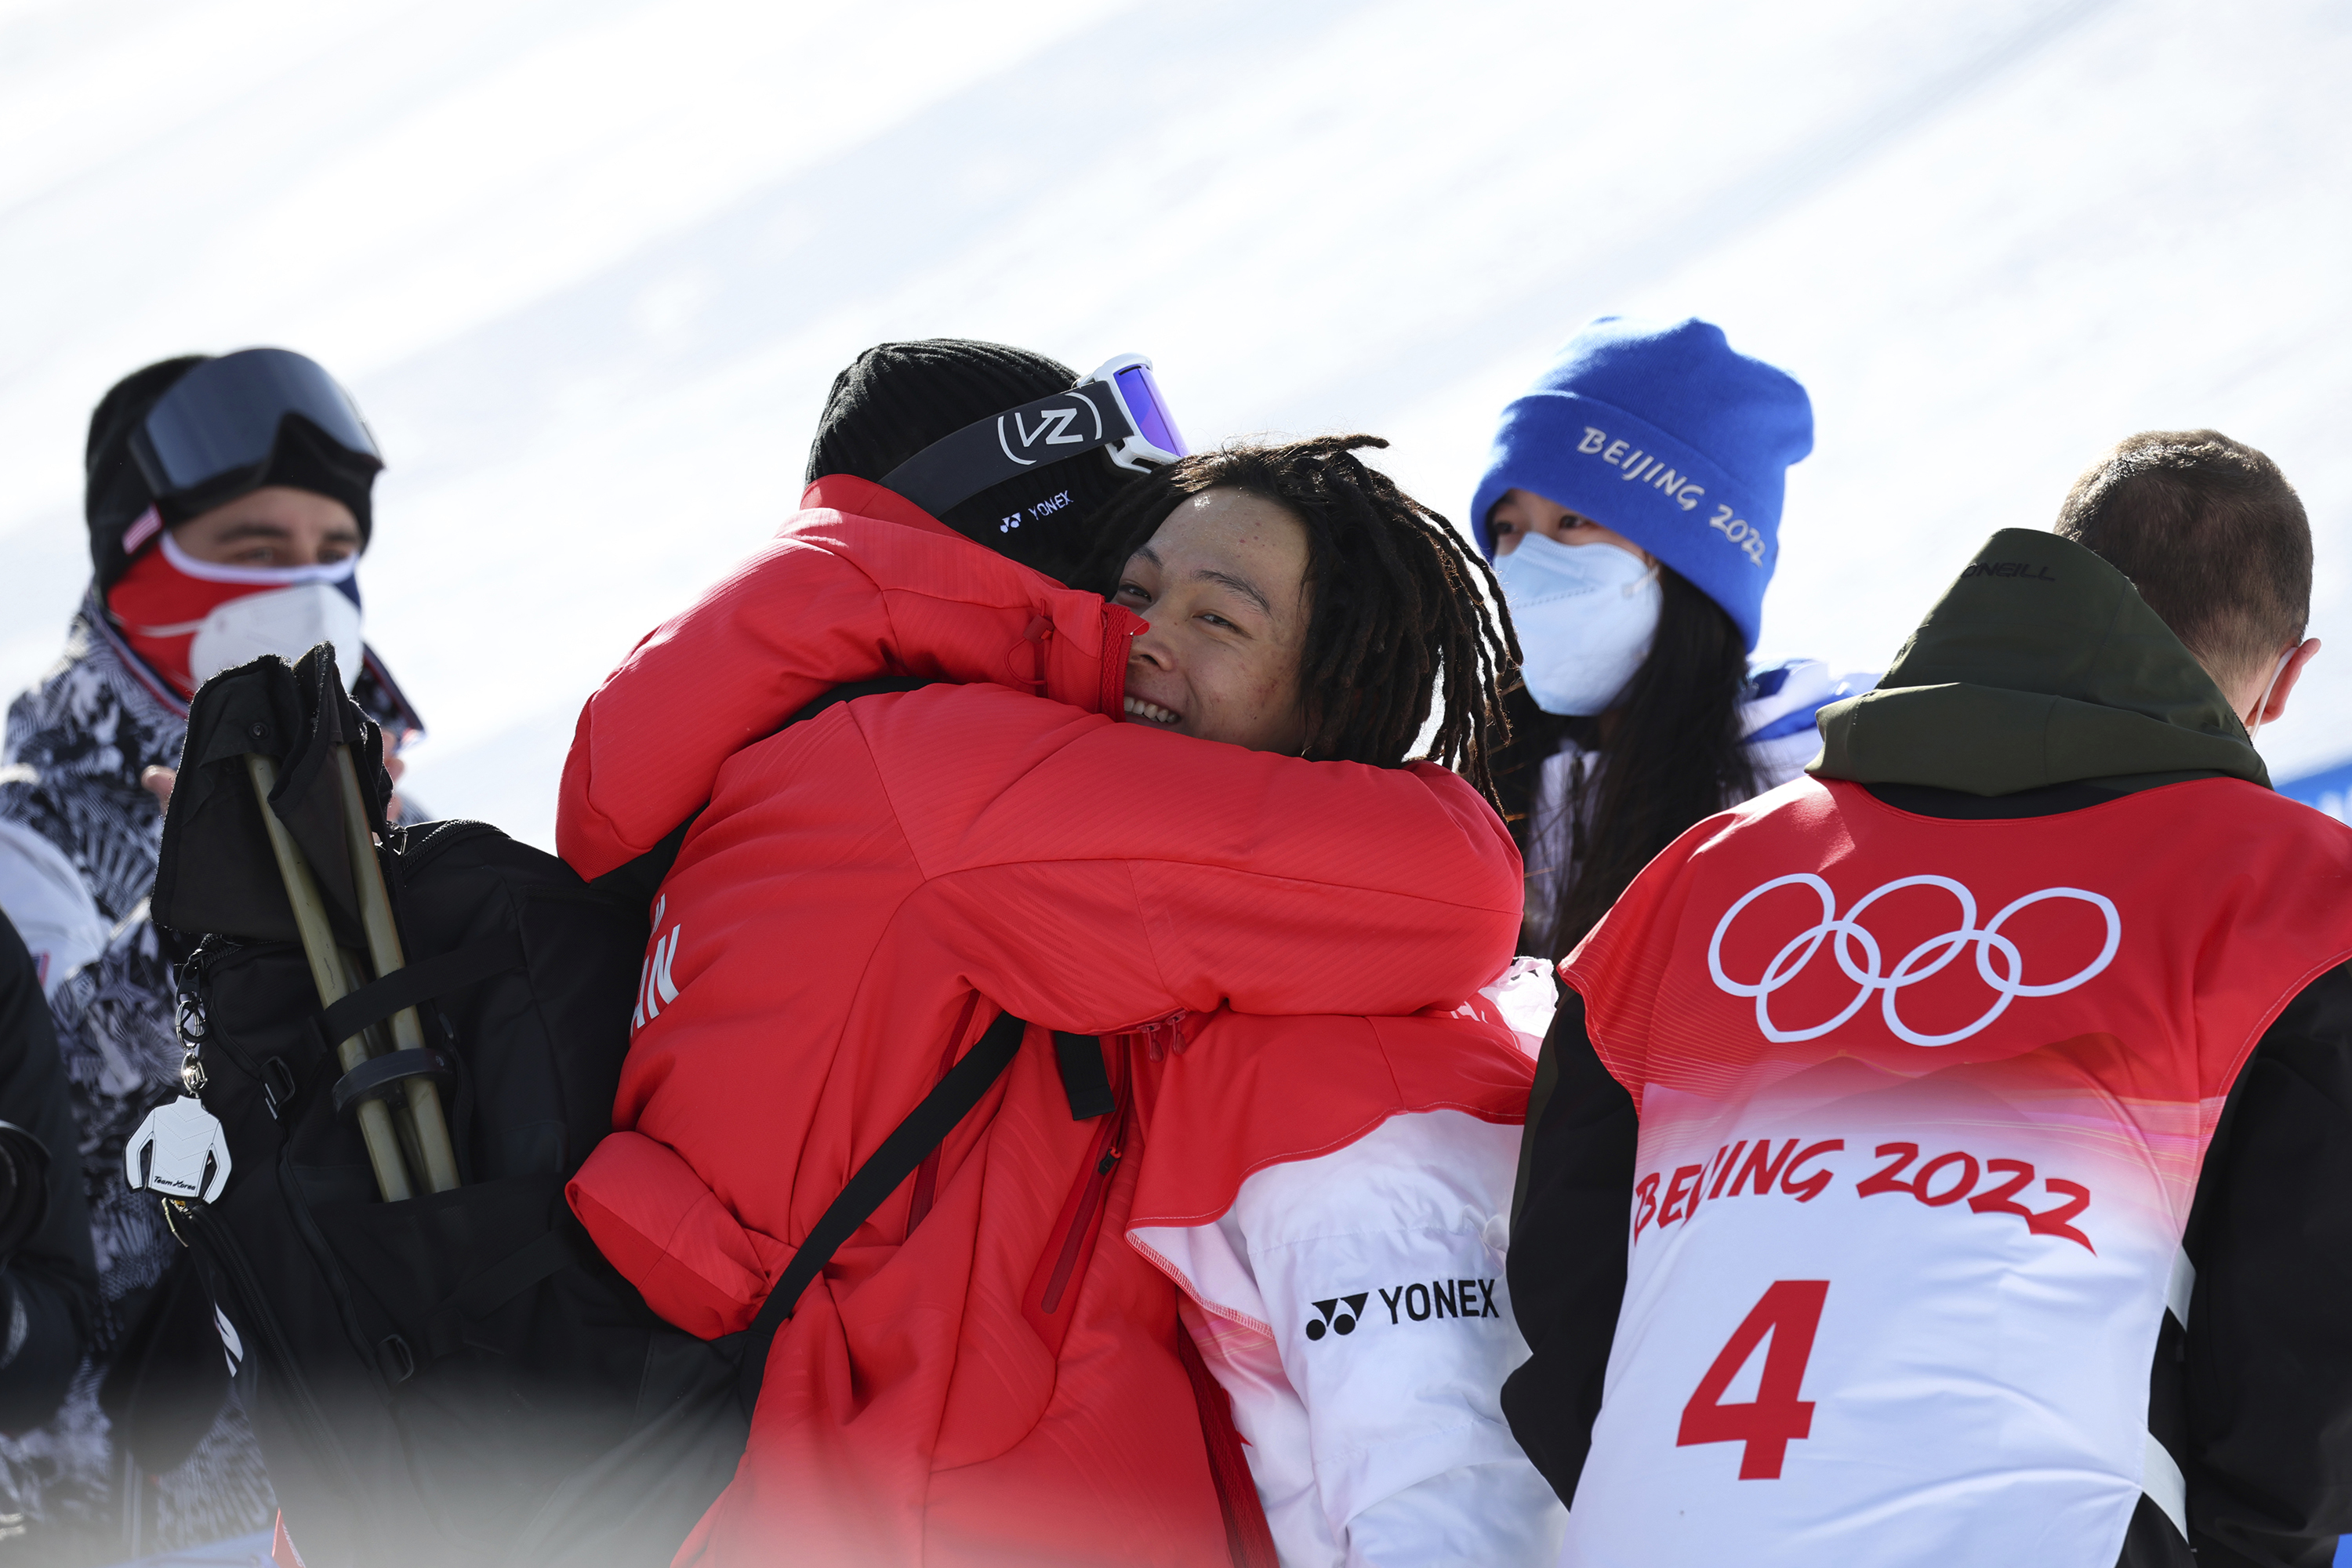 Beijing Winter Olympics 2022: Shaun White and Scotty James break